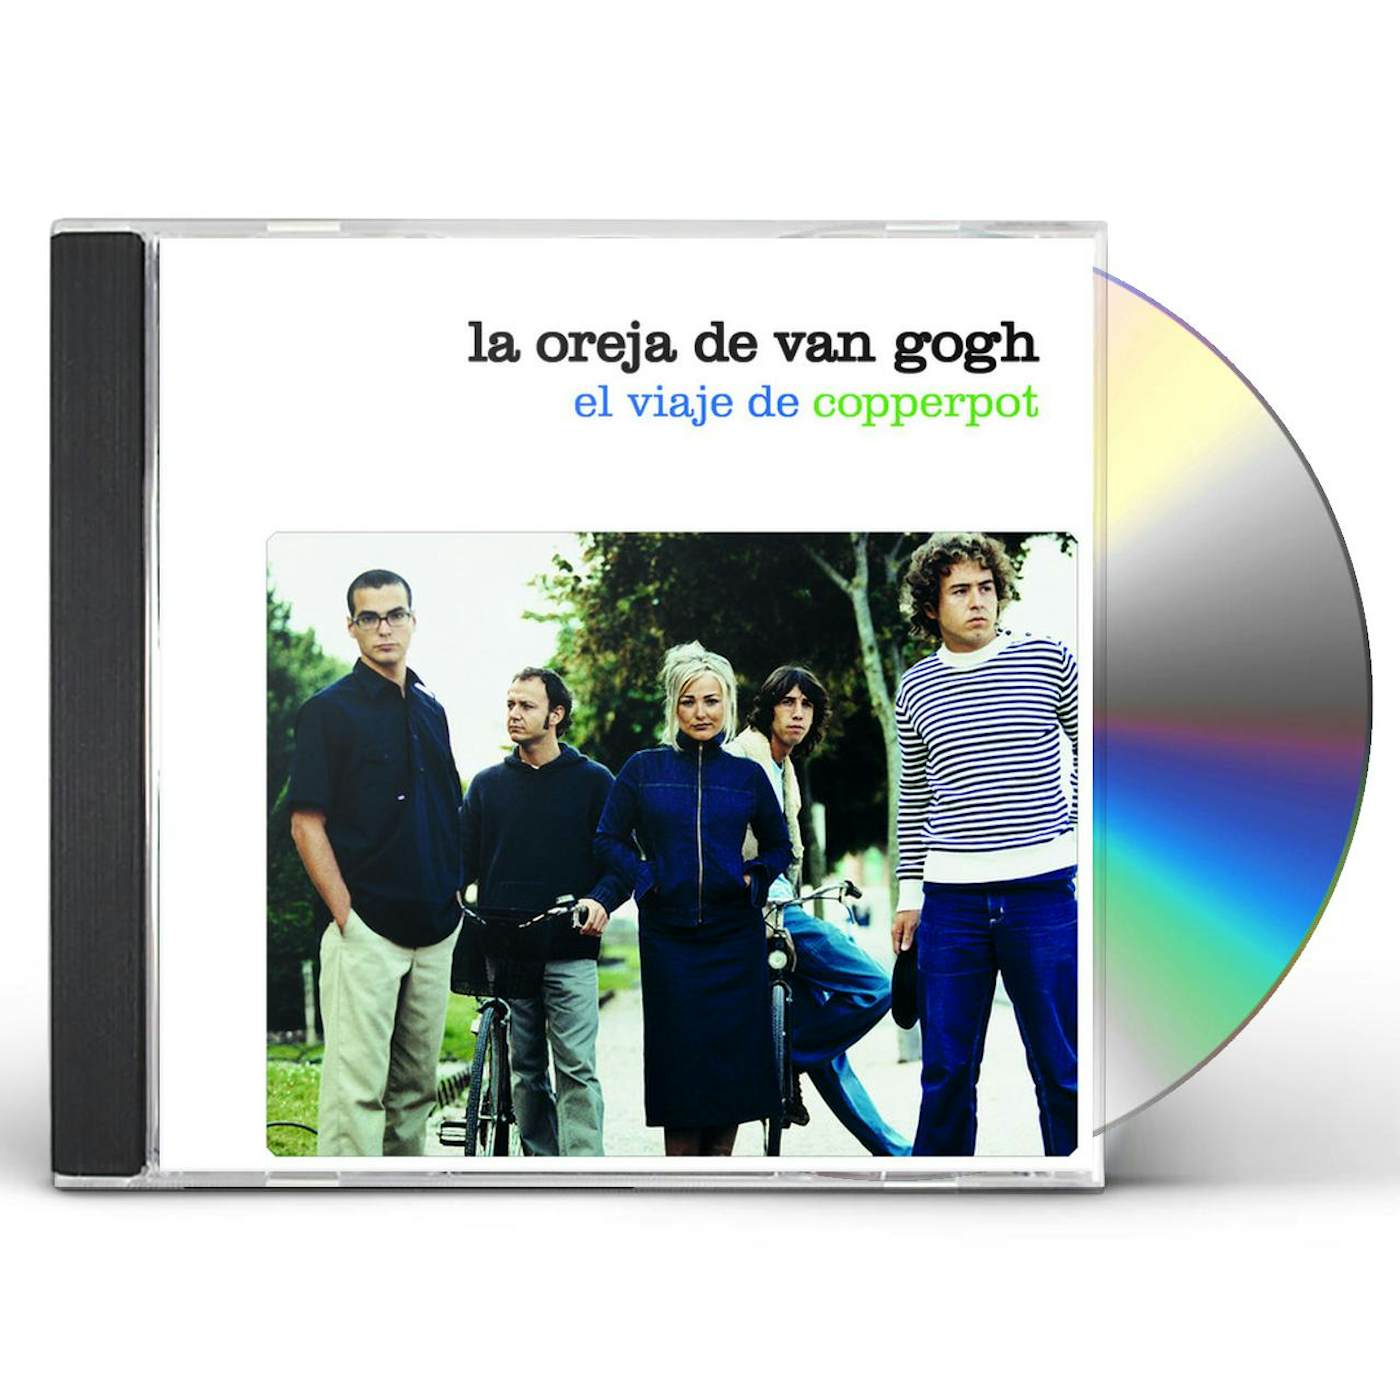 La Oreja De Van Gogh Guapa Lp Acetato Vinyl /rojo